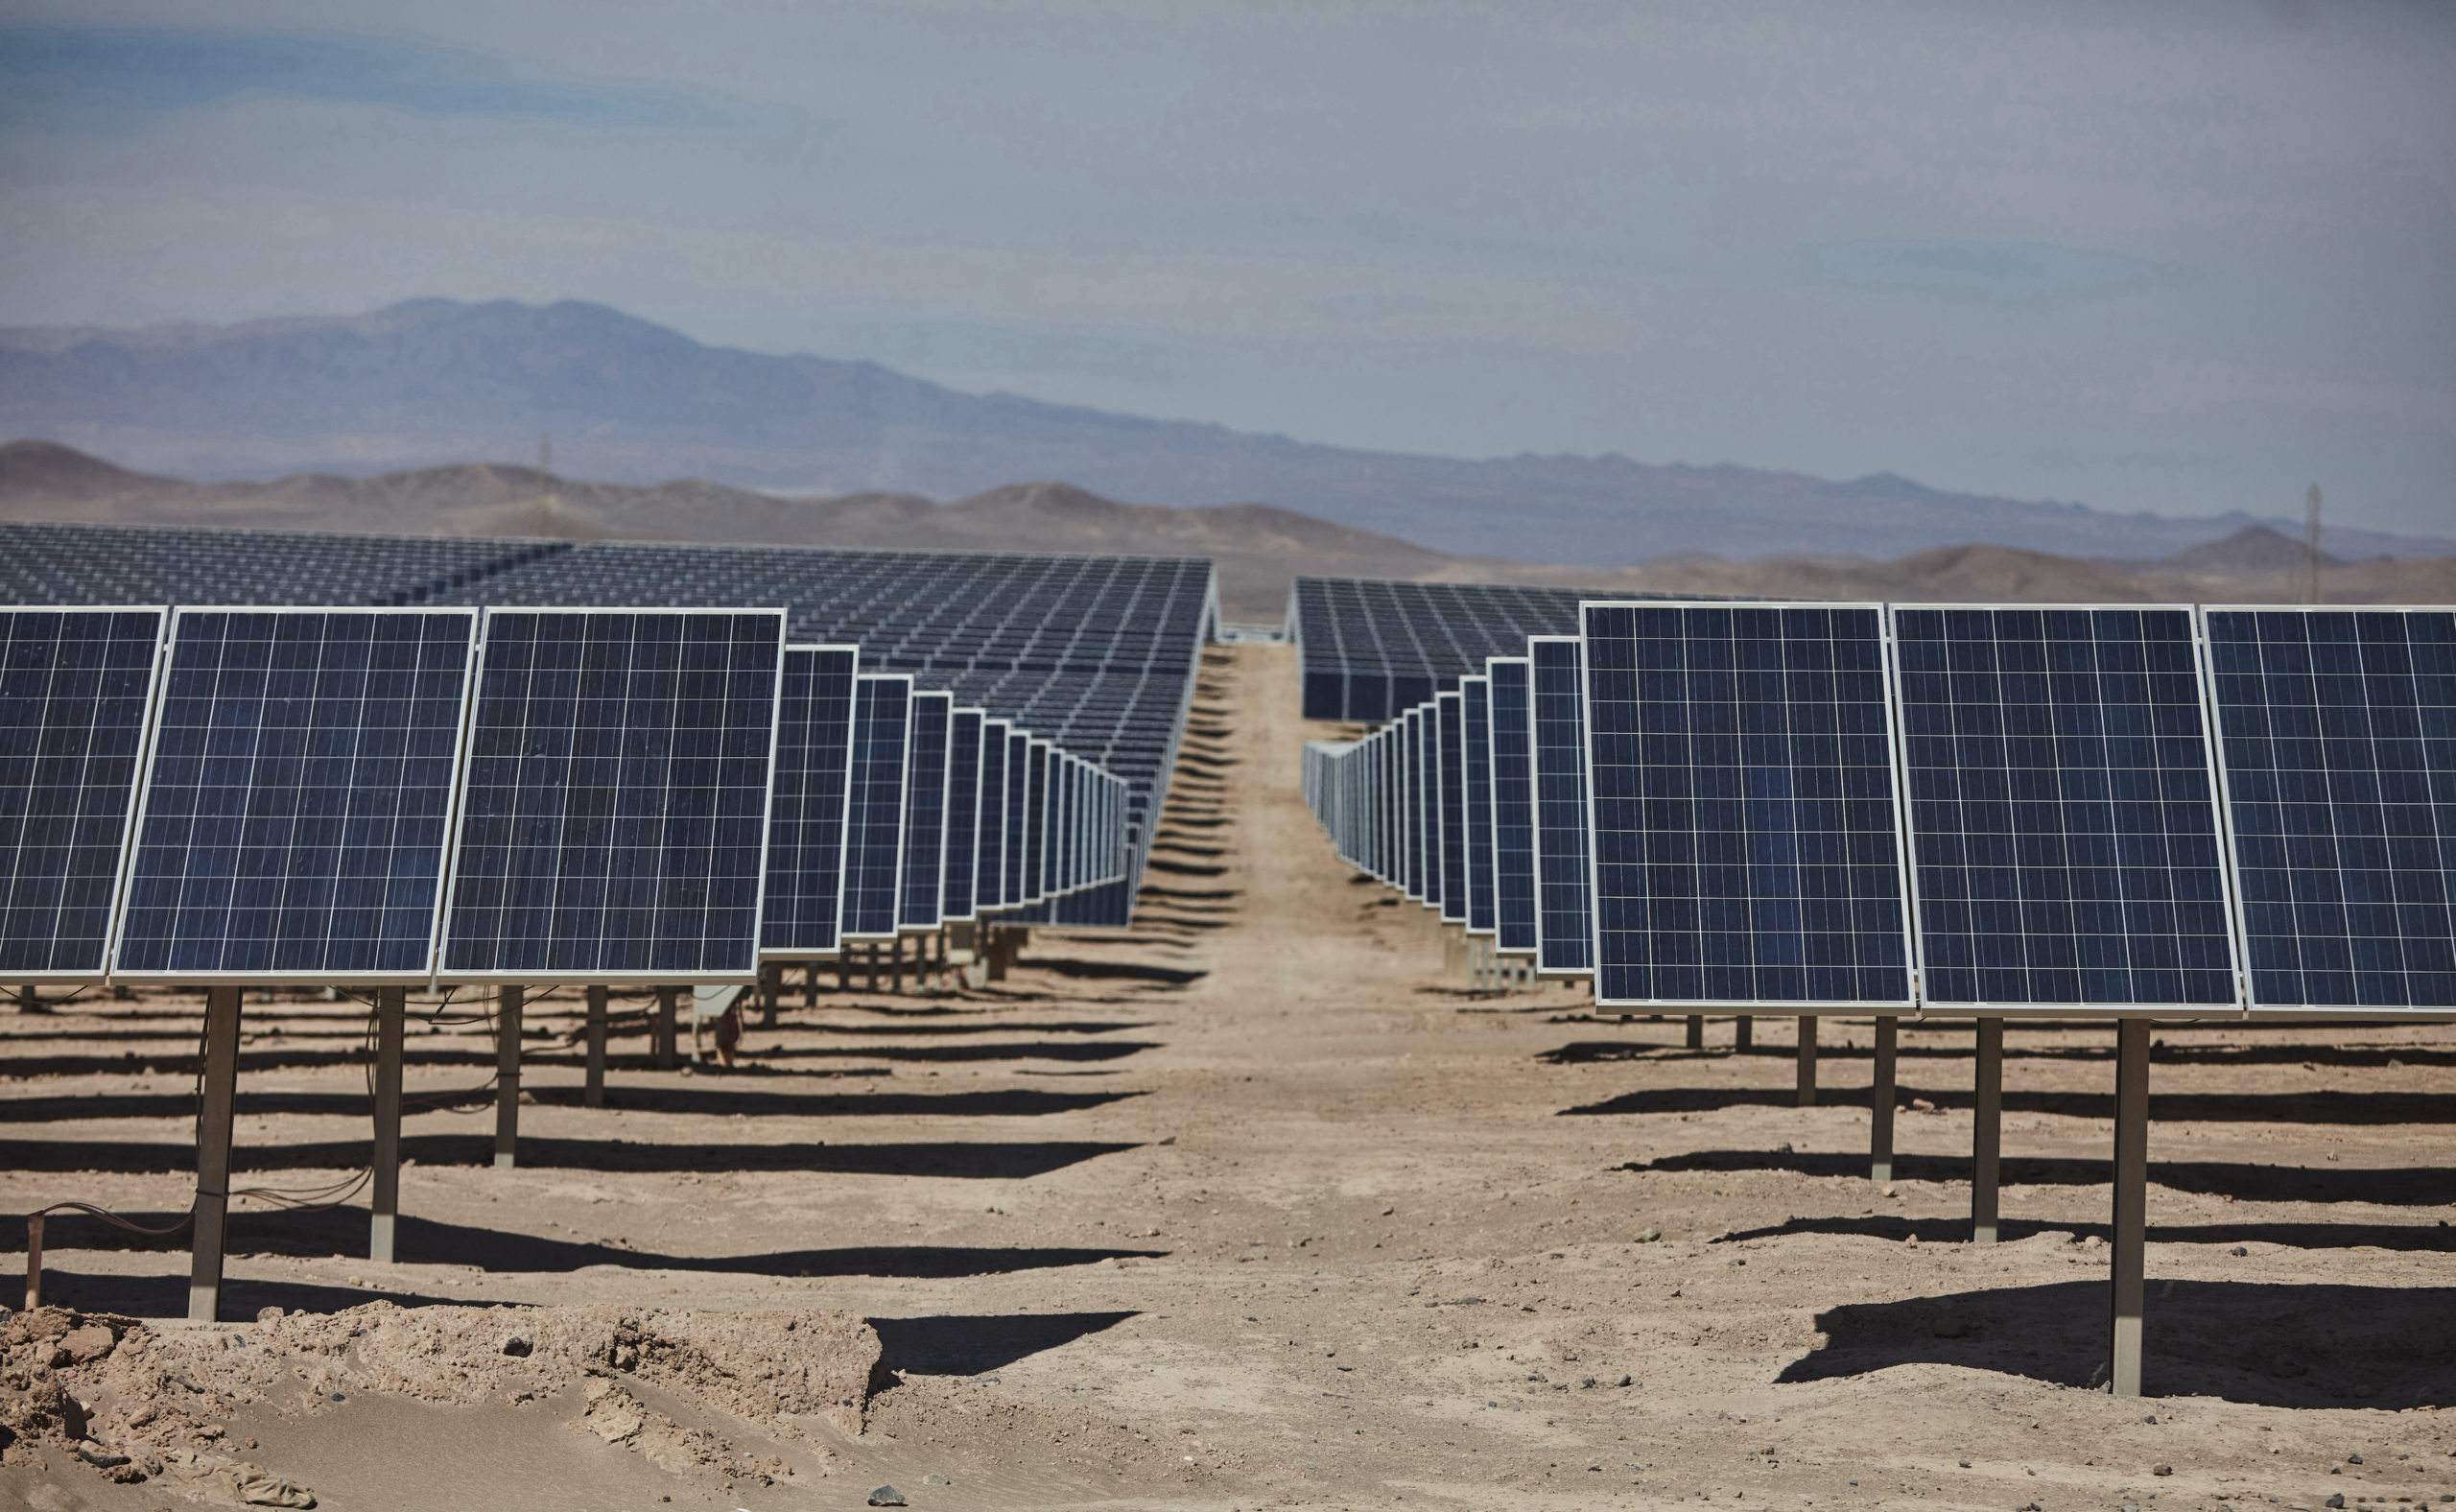 Proyecto Fotovoltaico Pampa Unión del Grupo Cerro Dominador consigue aprobación ambiental para aumentar capacidad de generación a 600 MW